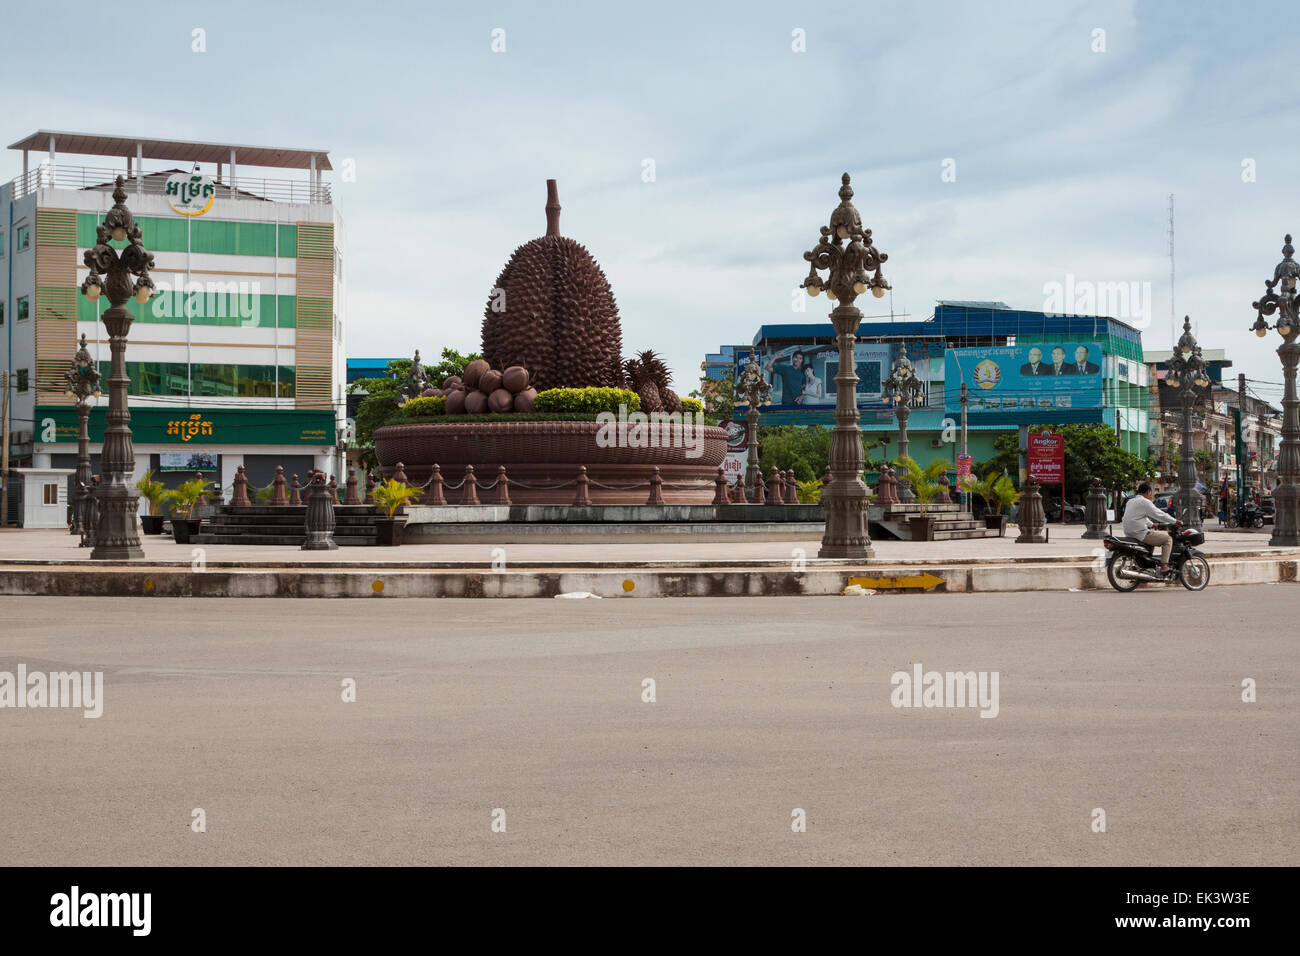 Le centre-ville de Kampot - la statue de Durian fruit emblématique - le Cambodge, en Asie. Banque D'Images